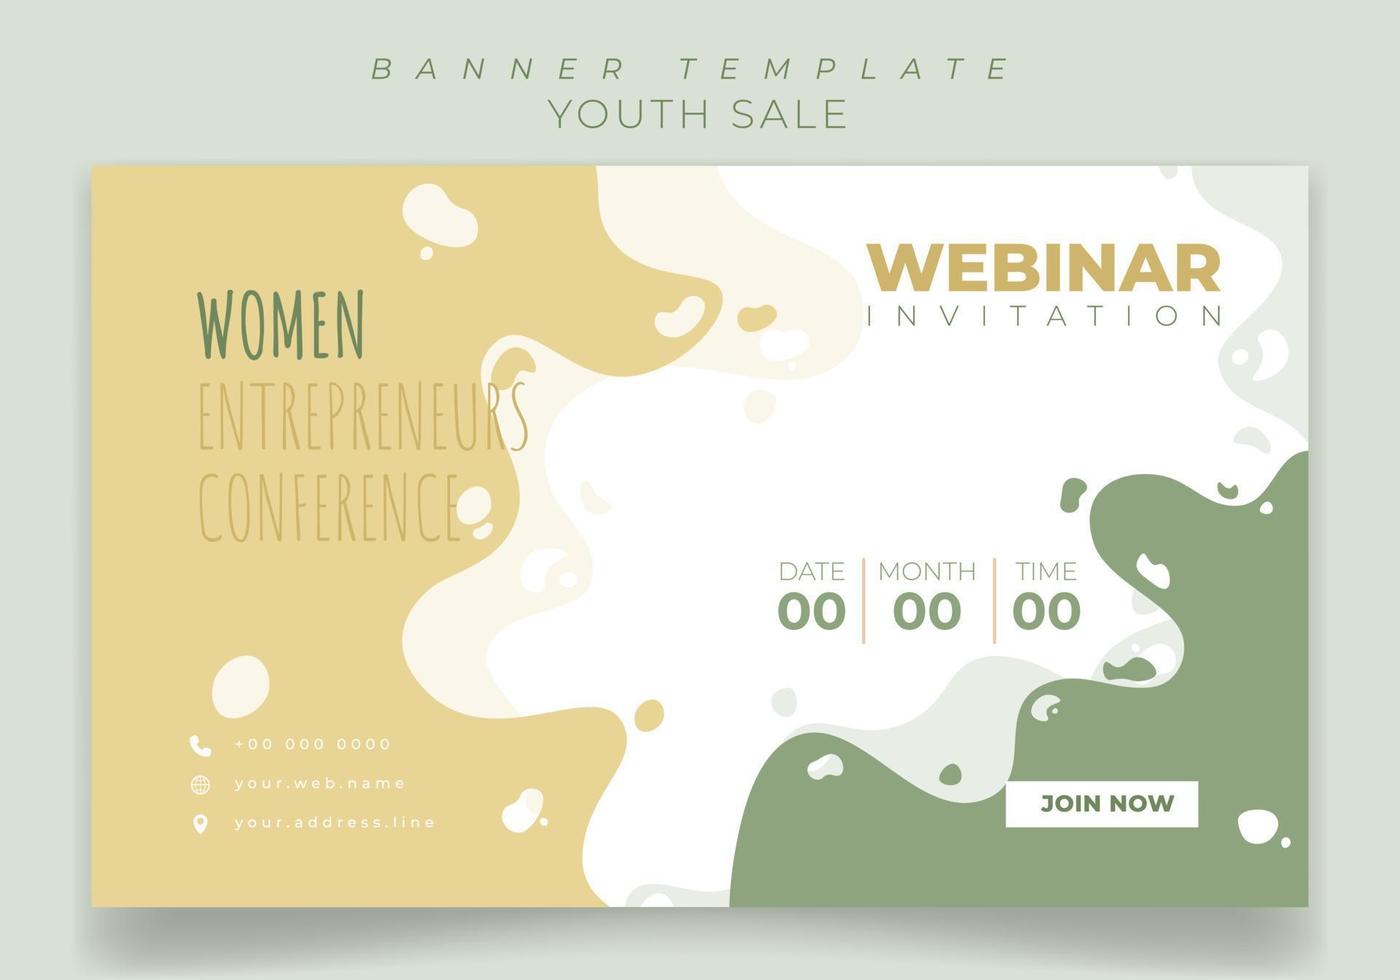 modelo de banner para design de convite de webinar com fundo em design de cor pastel vetor